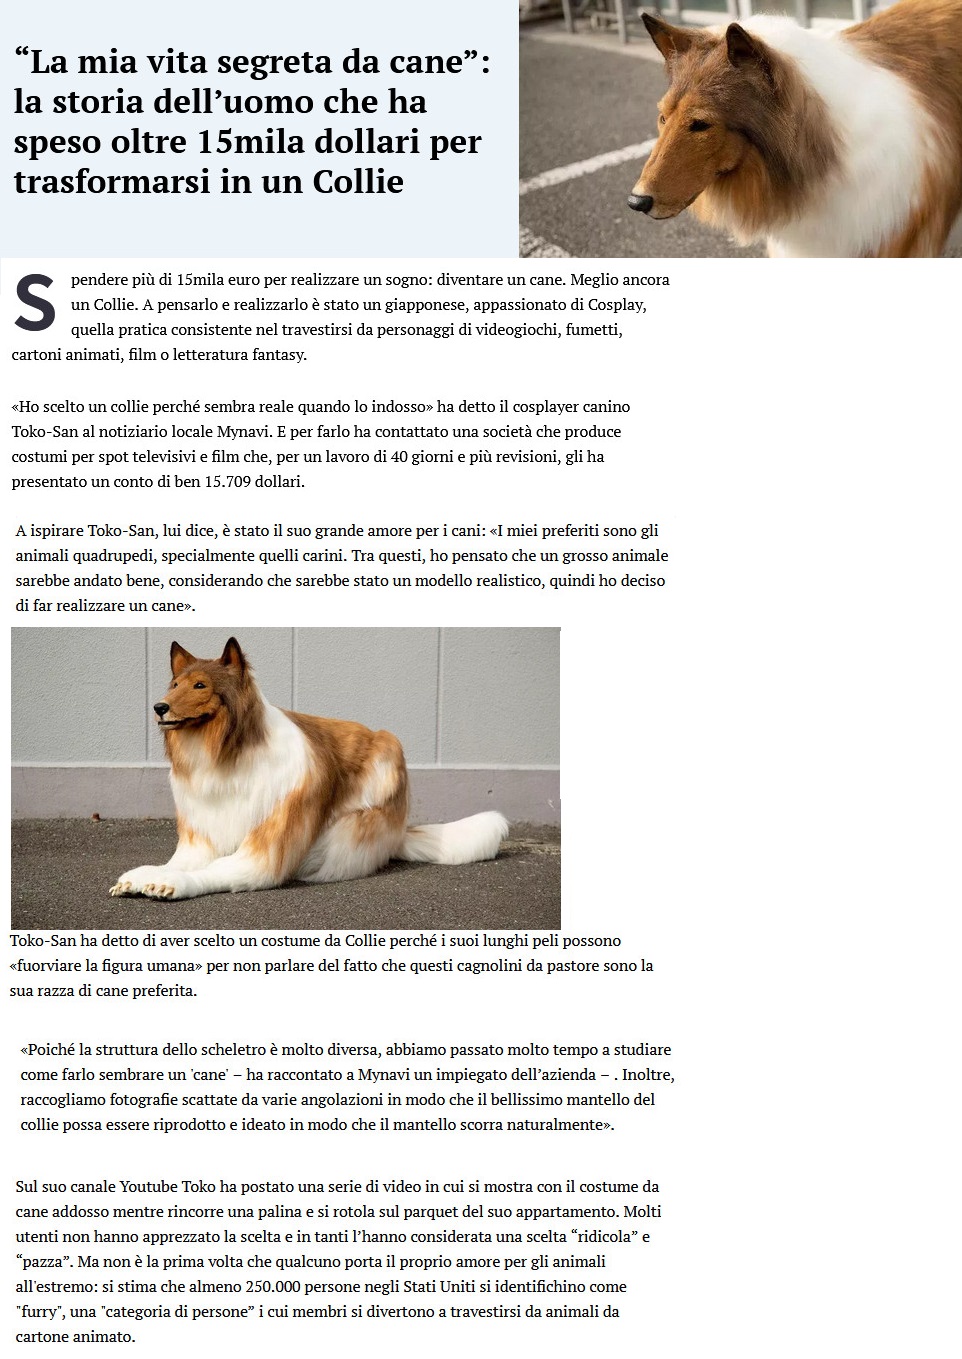 Benvenuto al cane e al gatto - Pagina 5 Cane141